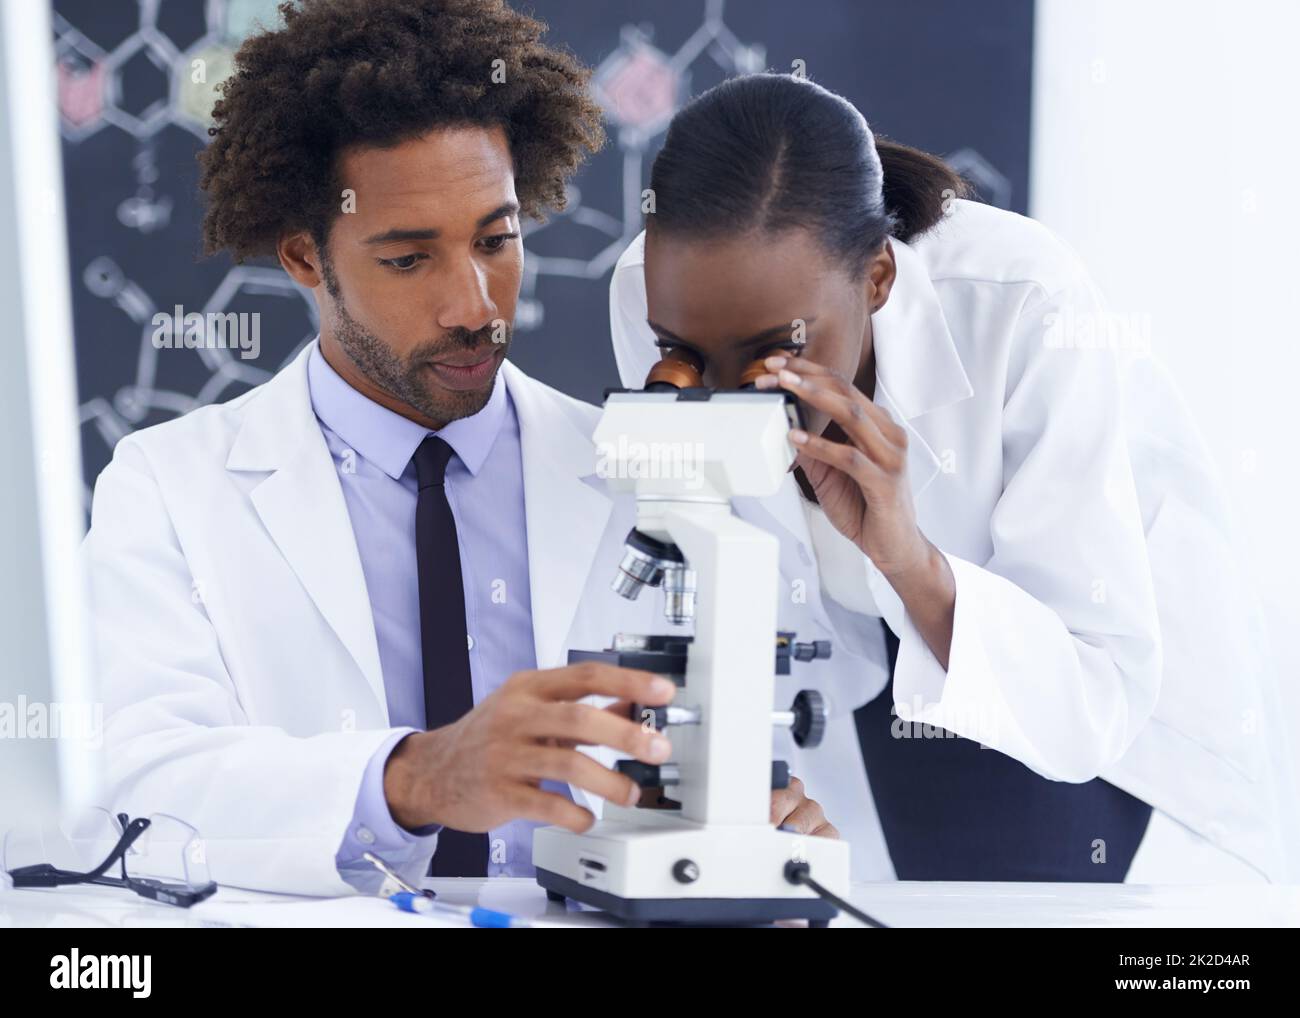 Vedere le cose da vicino. Shot di una biologa femminile che esamina qualcosa al microscopio con la sua collega. Foto Stock